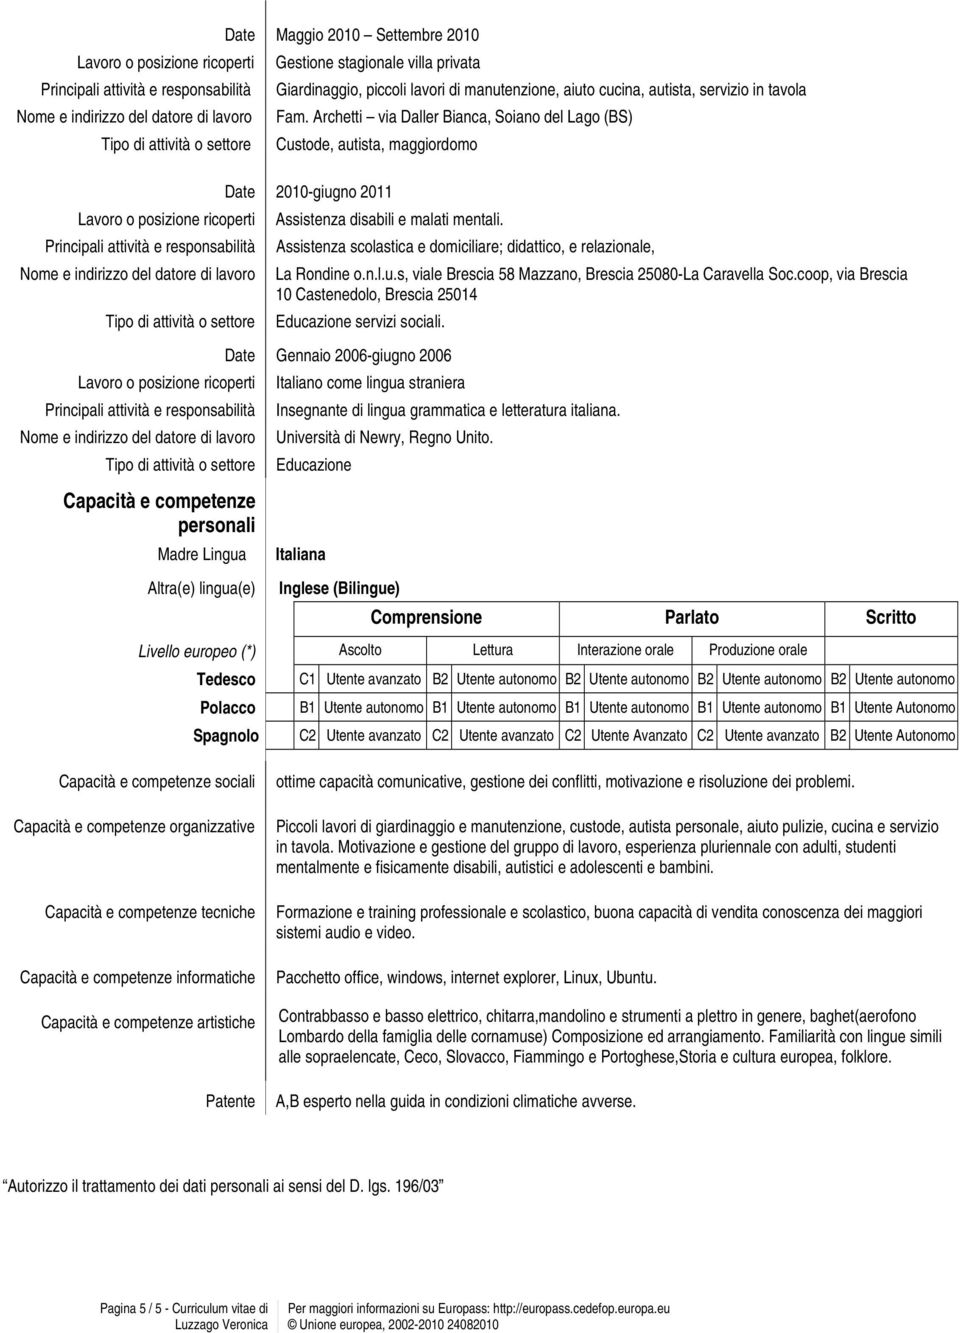 Assistenza scolastica e domiciliare; didattico, e relazionale, La Rondine o.n.l.u.s, viale Brescia 58 Mazzano, Brescia 25080-La Caravella Soc.